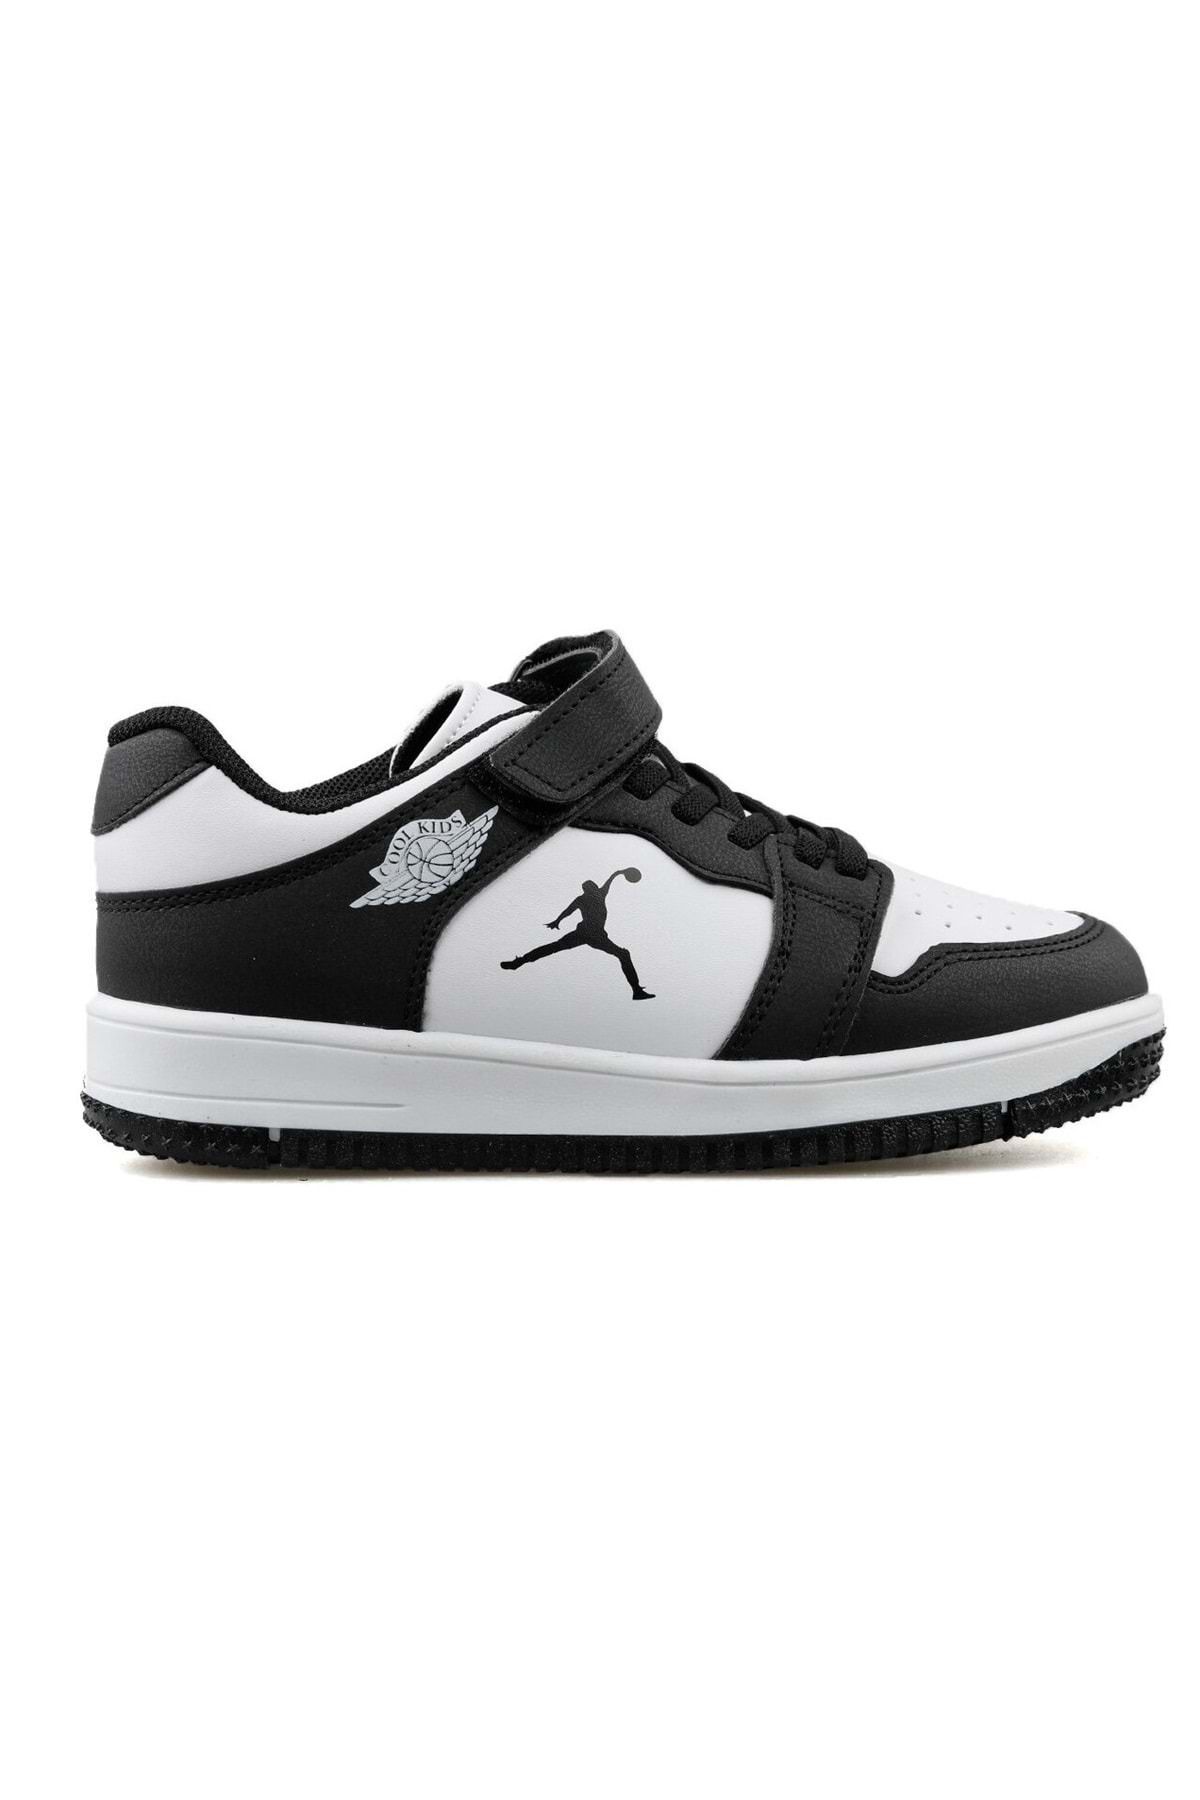 KOCAMANLAR Cool Glaxy Pekin Force Sneaker Çocuk Spor Ayakkabı Beyaz-siyah